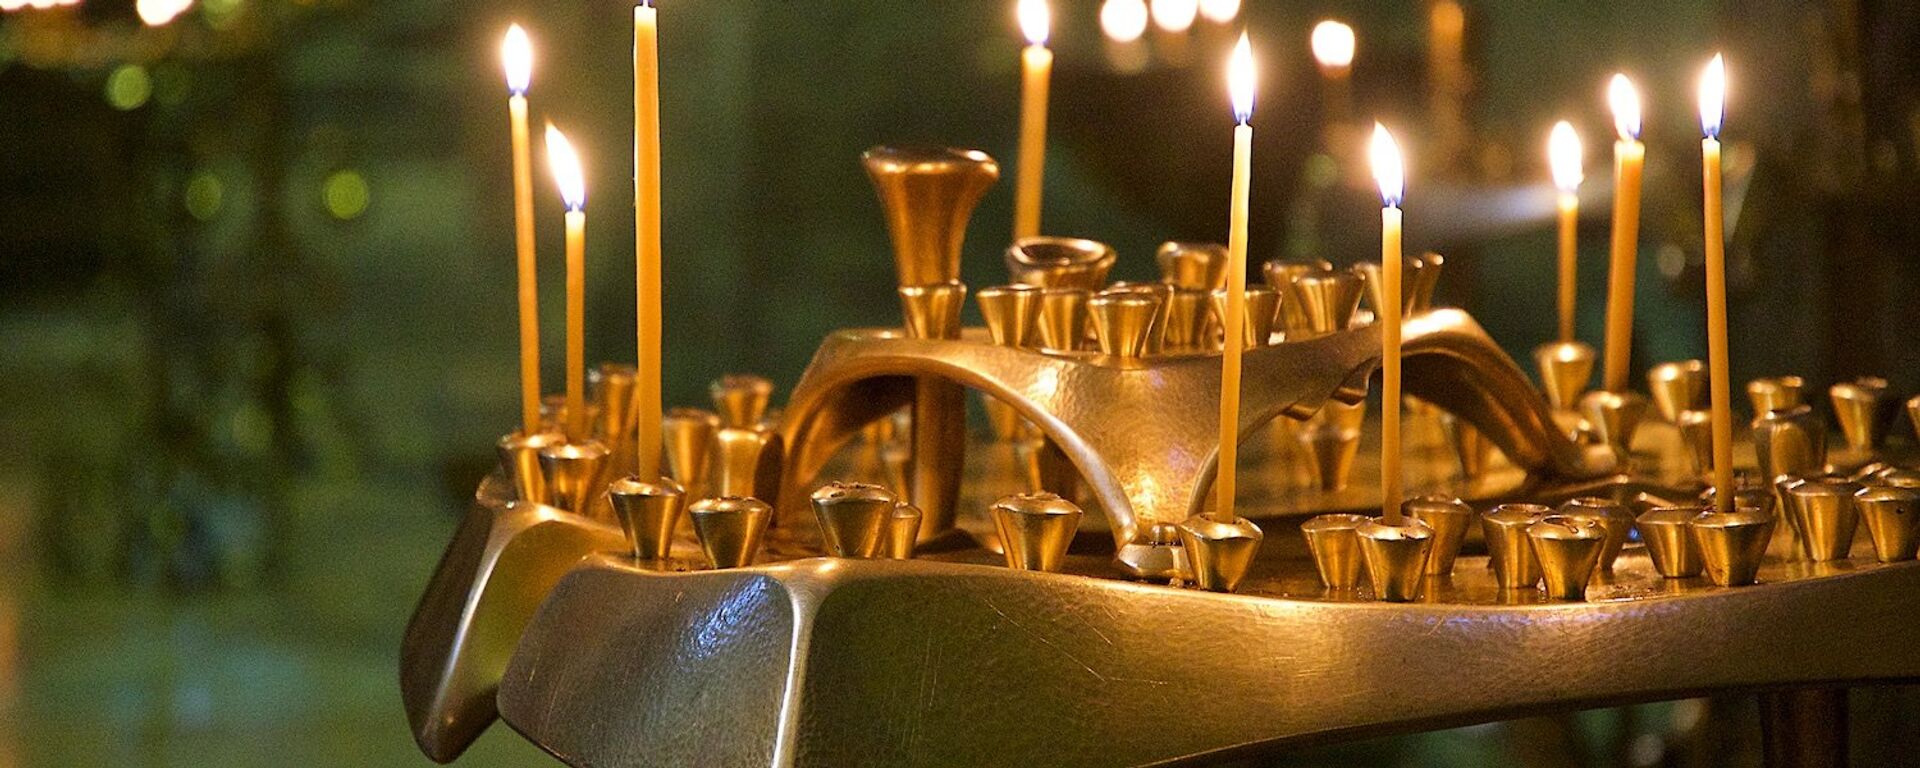 Горящие свечи в церкви - Sputnik Грузия, 1920, 10.06.2021